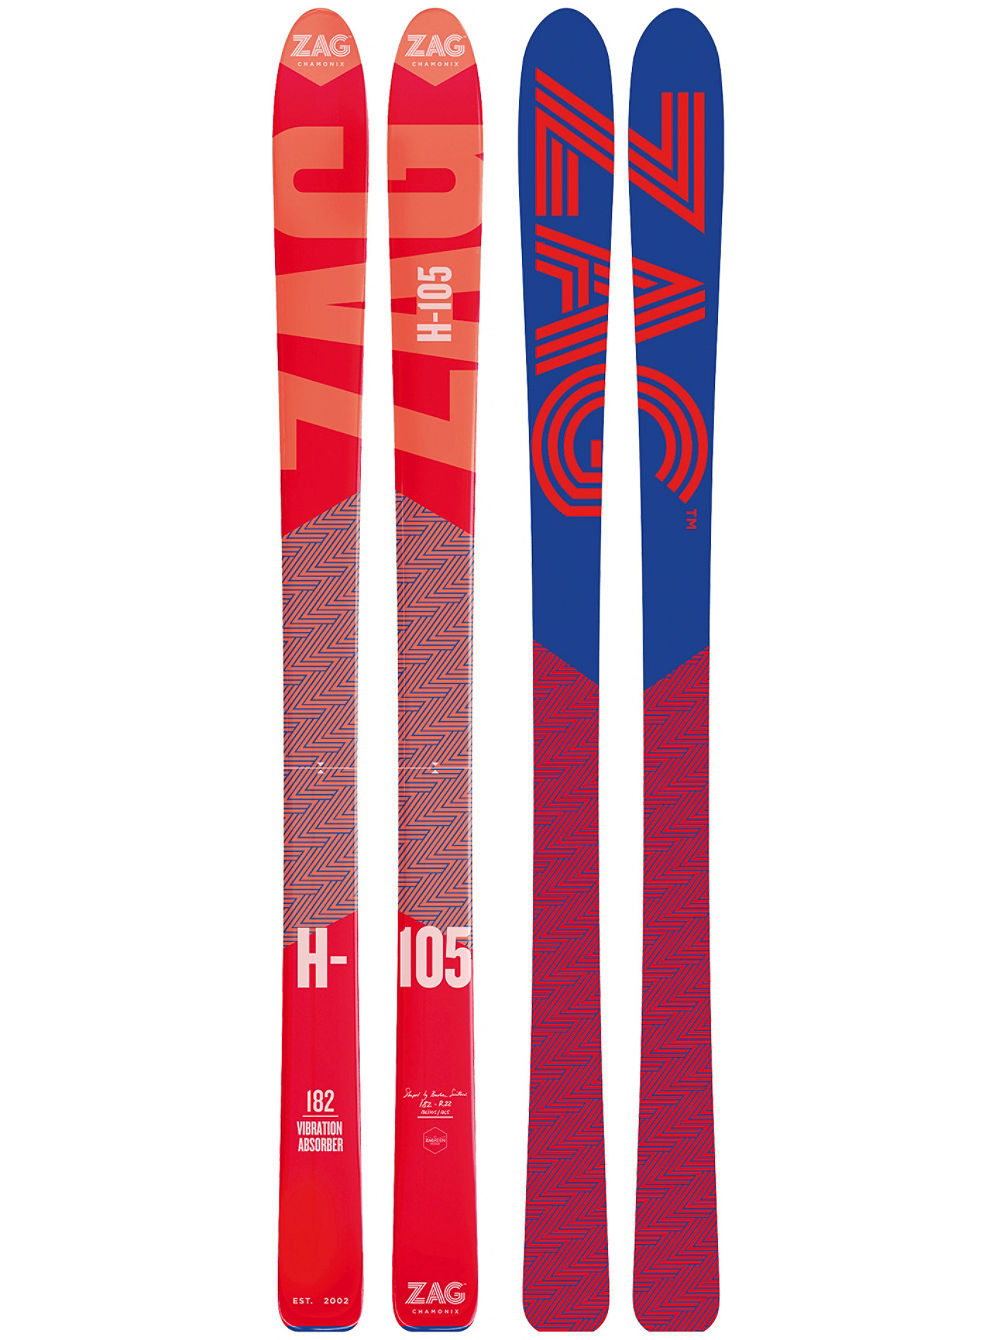 H-105 176 2019 Skidor